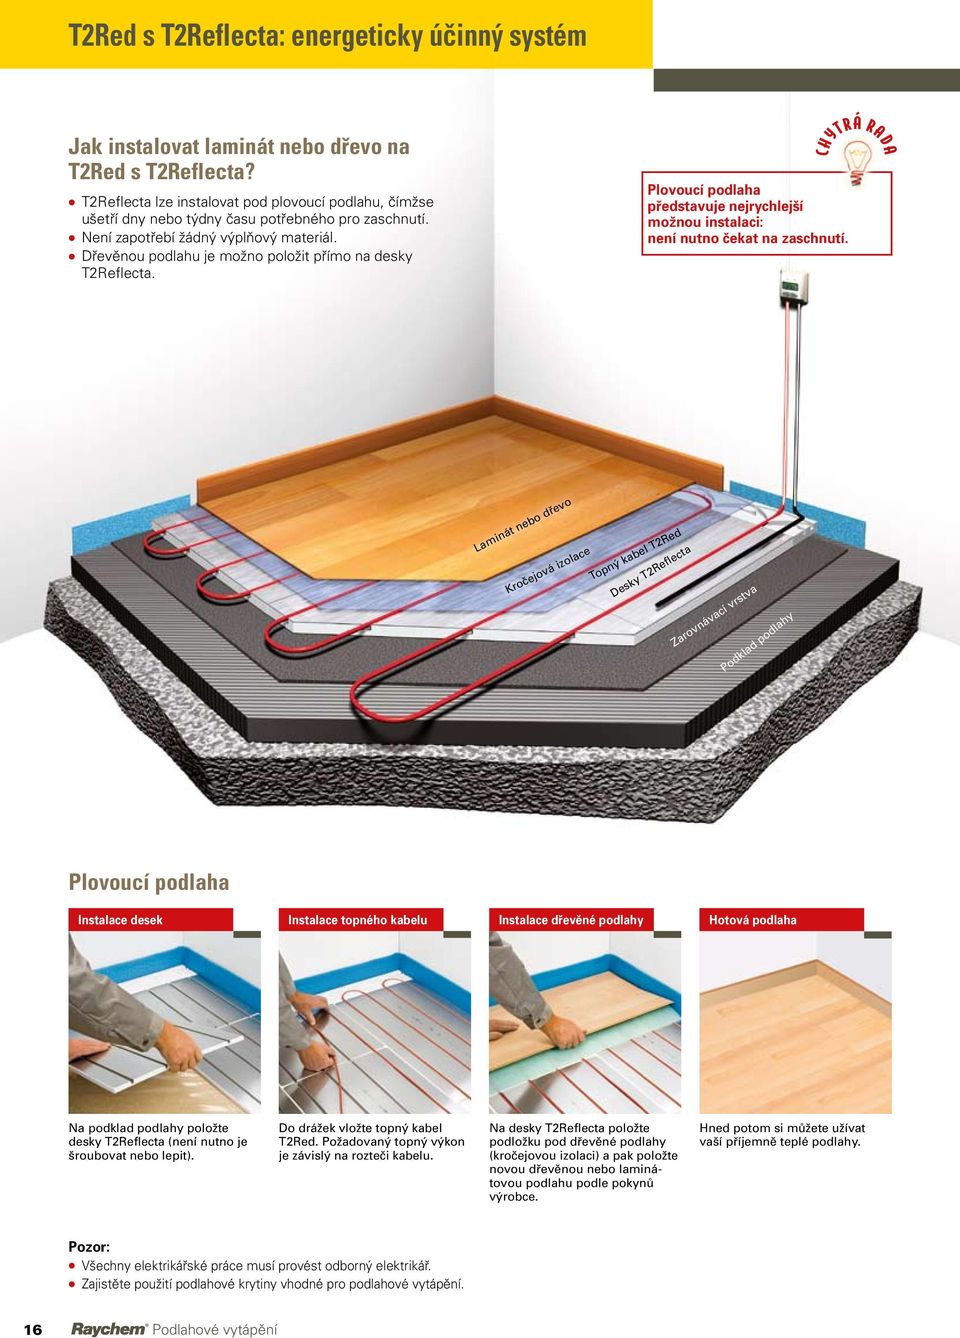 l Dřevěnou podlahu je možno položit přímo na desky T2Reflecta. Plovoucí podlaha představuje nejrychlejší možnou instalaci: není nutno čekat na zaschnutí.